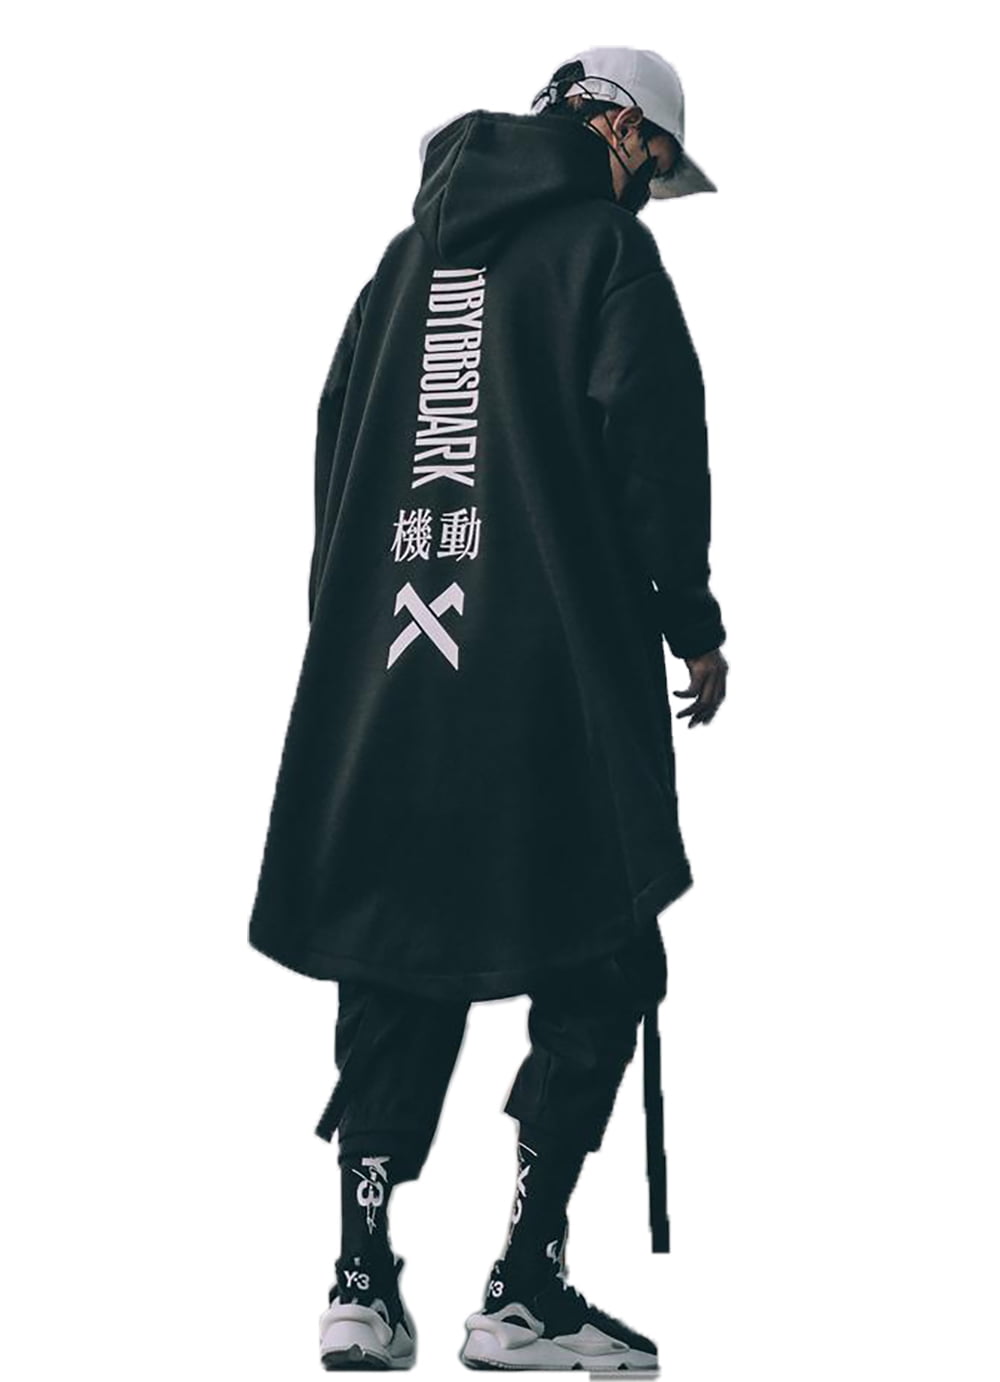 Futurism Male Streetwear Techwear Hoodie Black Cyberpunk Techwear Jacket Gothic Warcore Pockets Punk Coats Men Casual Bomber Outerwear